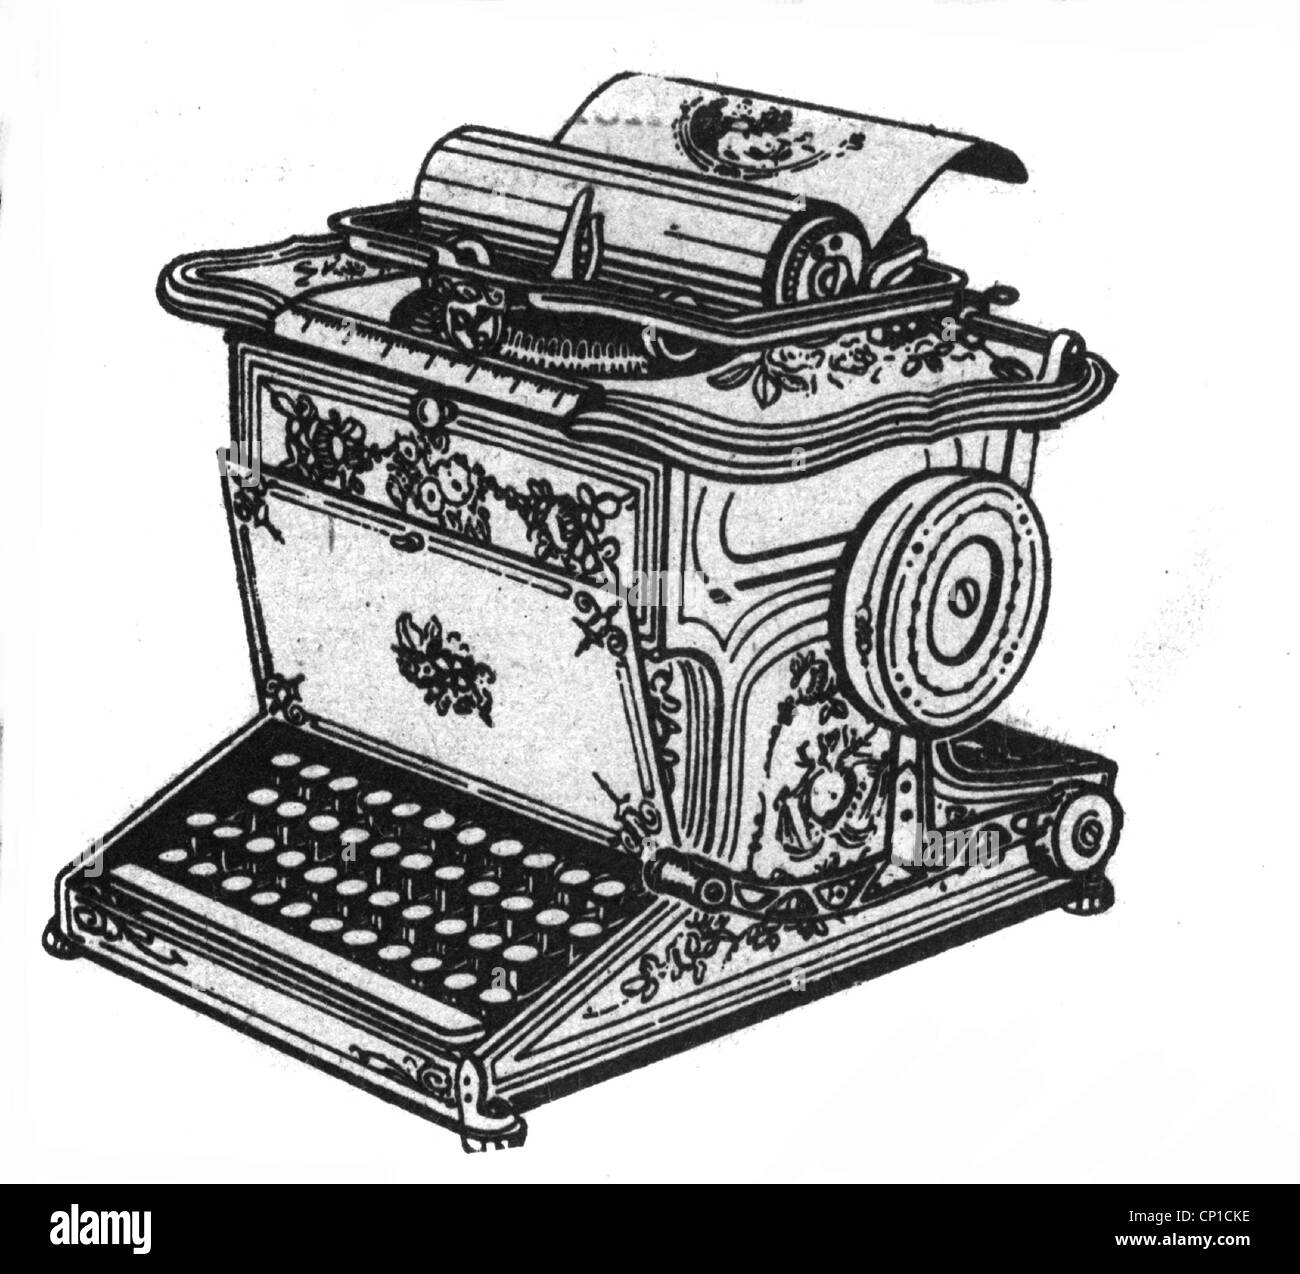 Écriture / écriture, machine à écrire, Remington Modell 1, design par Latham Sholes, 1876, gravure en bois, 19e siècle, touches, claviers, clavier alphanumérique, clavier qwerty, machine, machines, typebar machine à écrire, machine